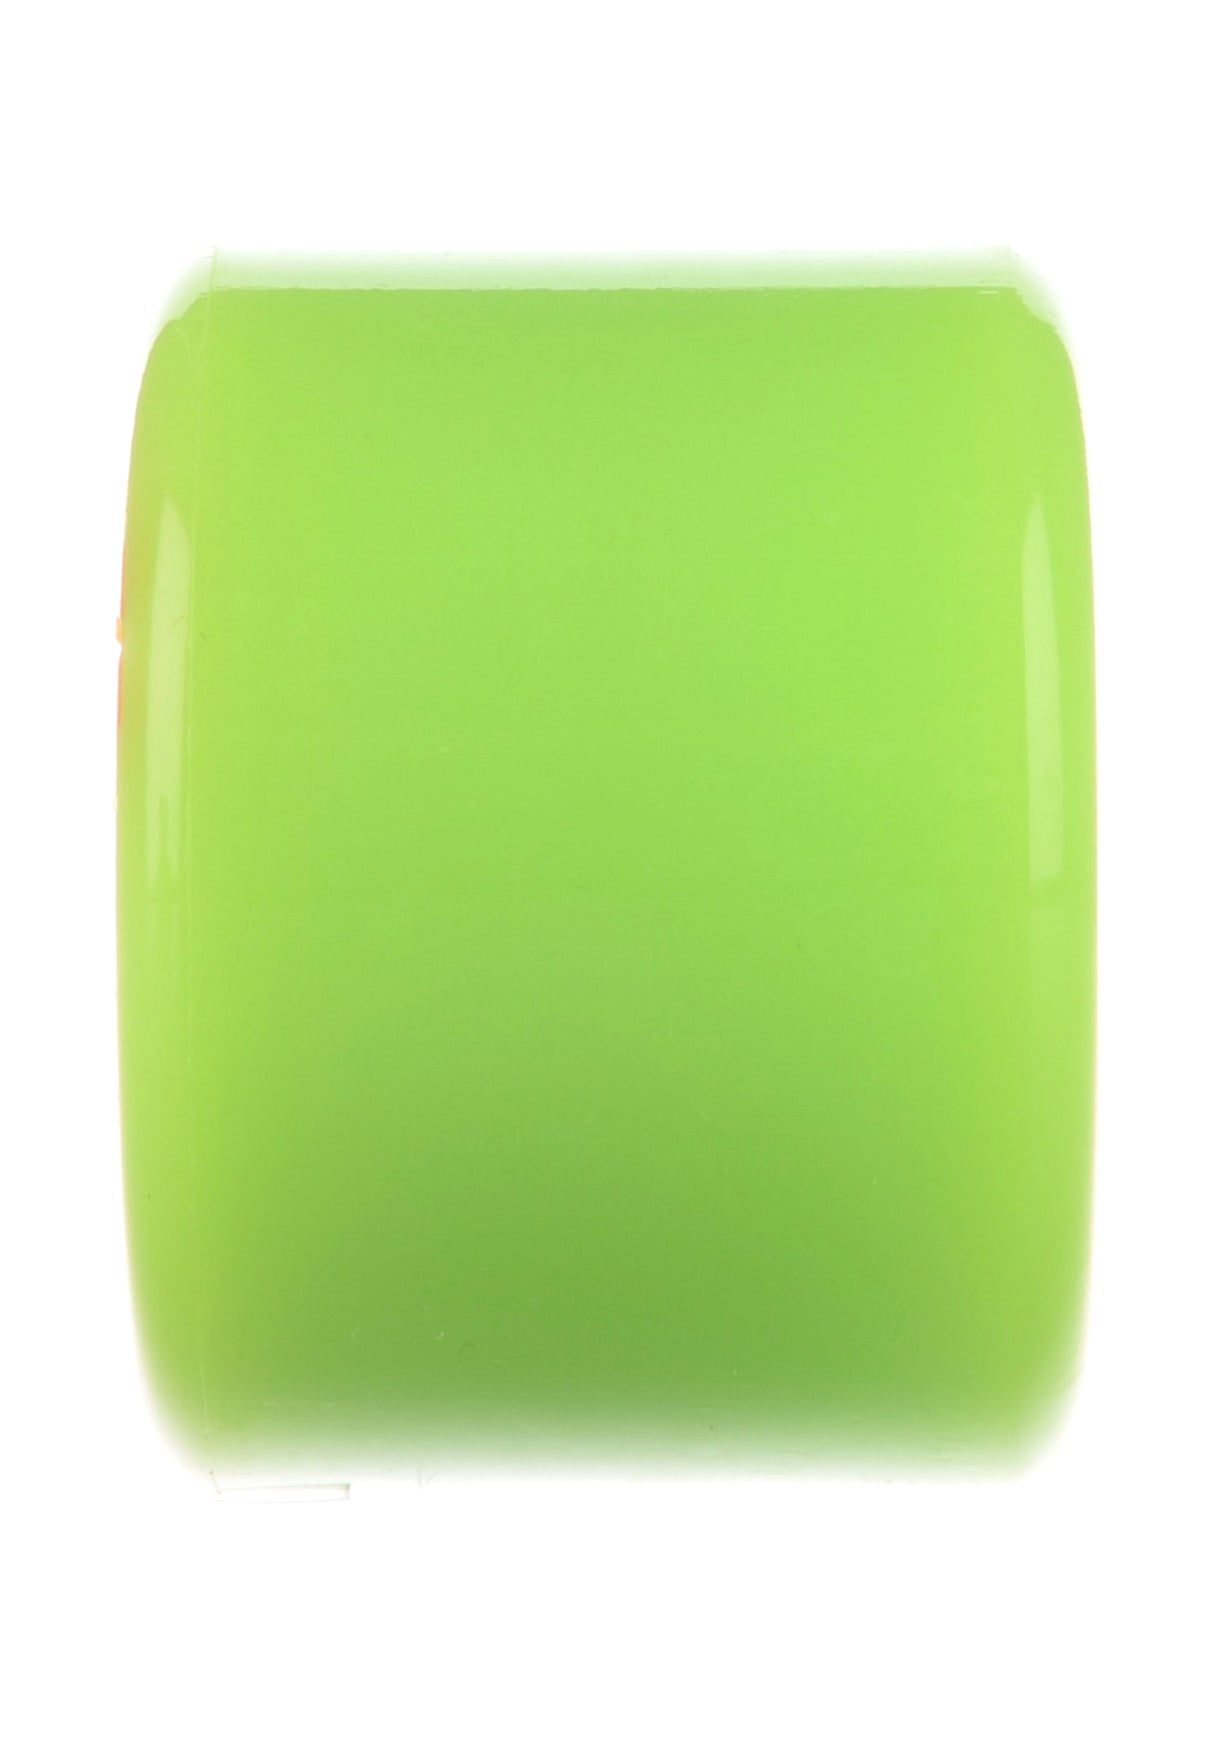 Super Juice 78A green Close-Up1